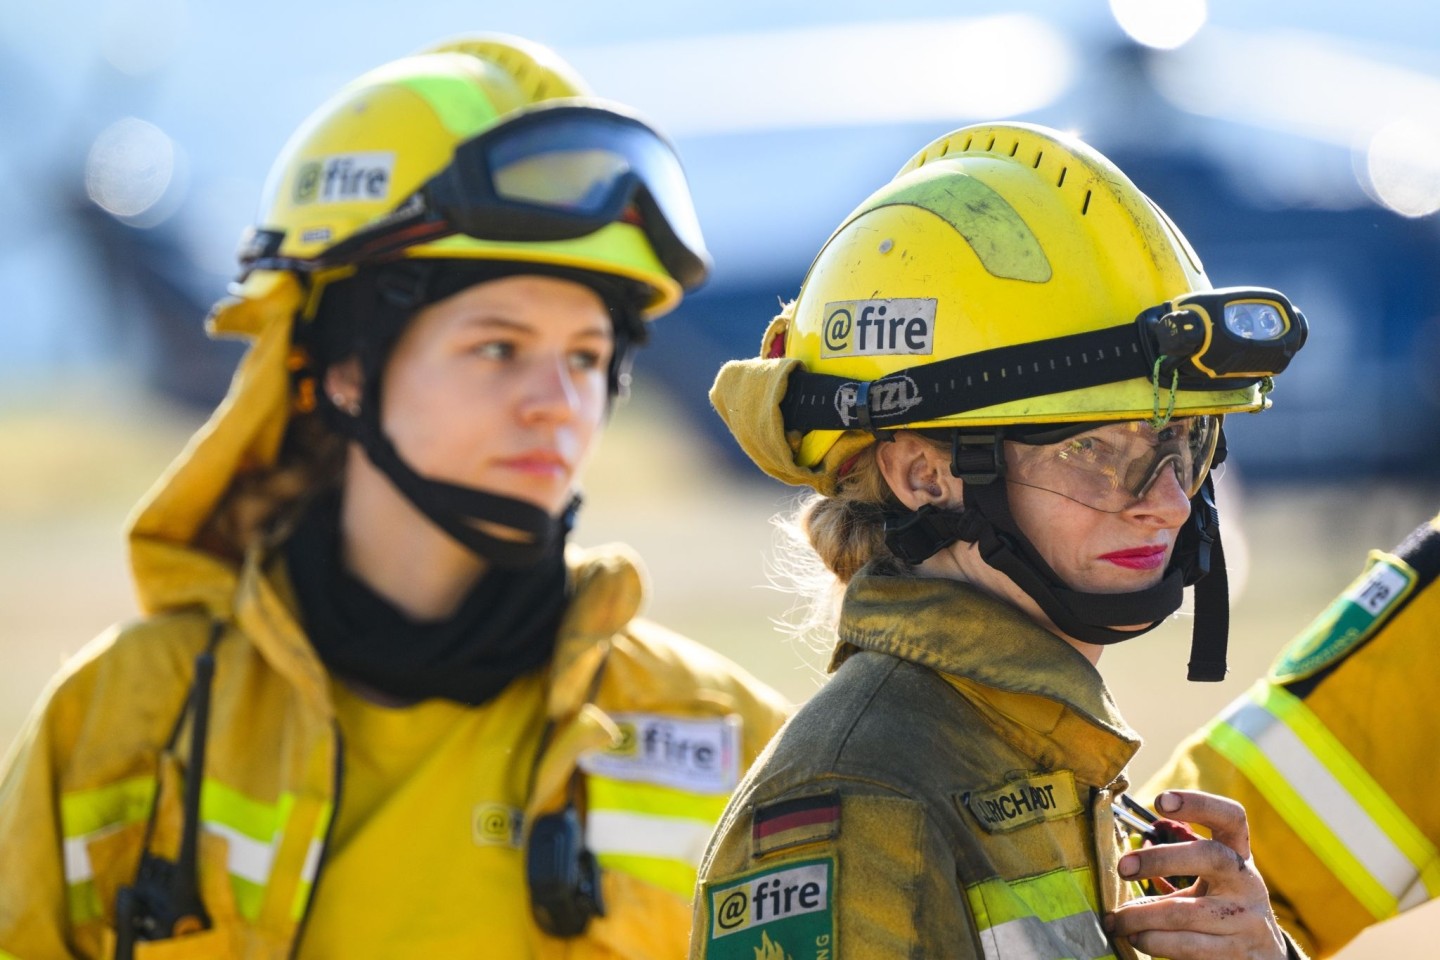 Julia Richardt (r), freiwillige Feuerwehrfrau bei dem Internationalen Katastrophenschutz Deutschland „@fire“, im Einsatz in der Sächsischen Schweiz.